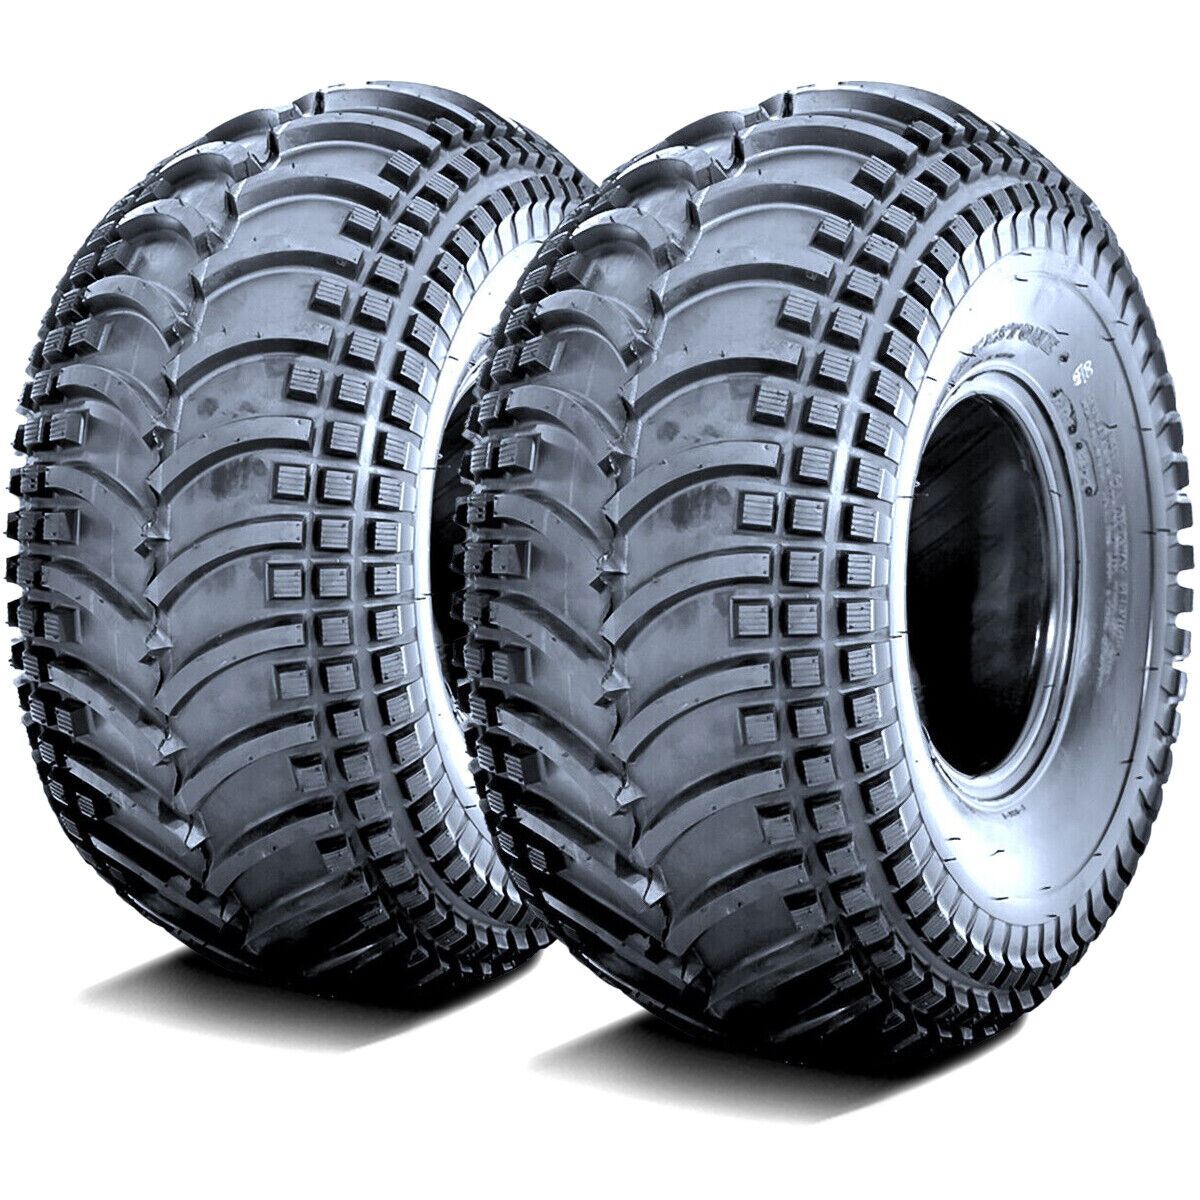 2 Tires 22x11.00-8 22x11-8 22x11x8 Deestone D930 MT M/T Mud ATV UTV 43F 4 Ply